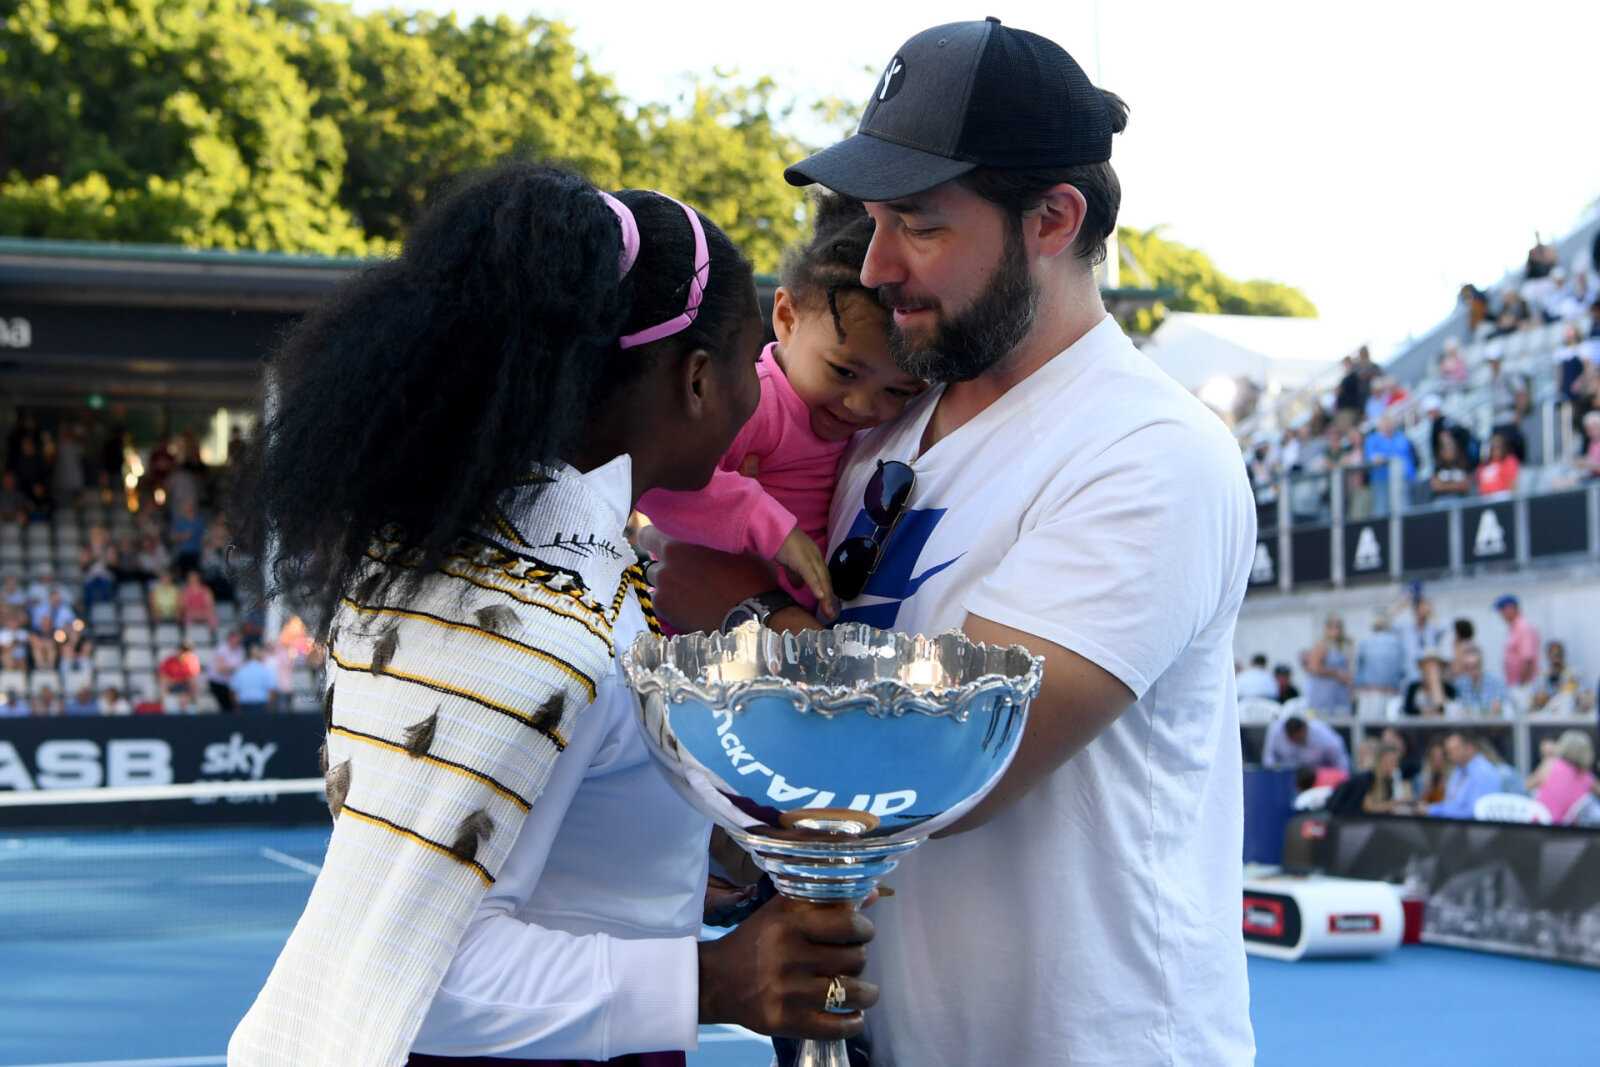 "Ce n'est pas encore fait?" - Olympia de Serena Williams et son père Alexis Ohanian partagent un moment adorable